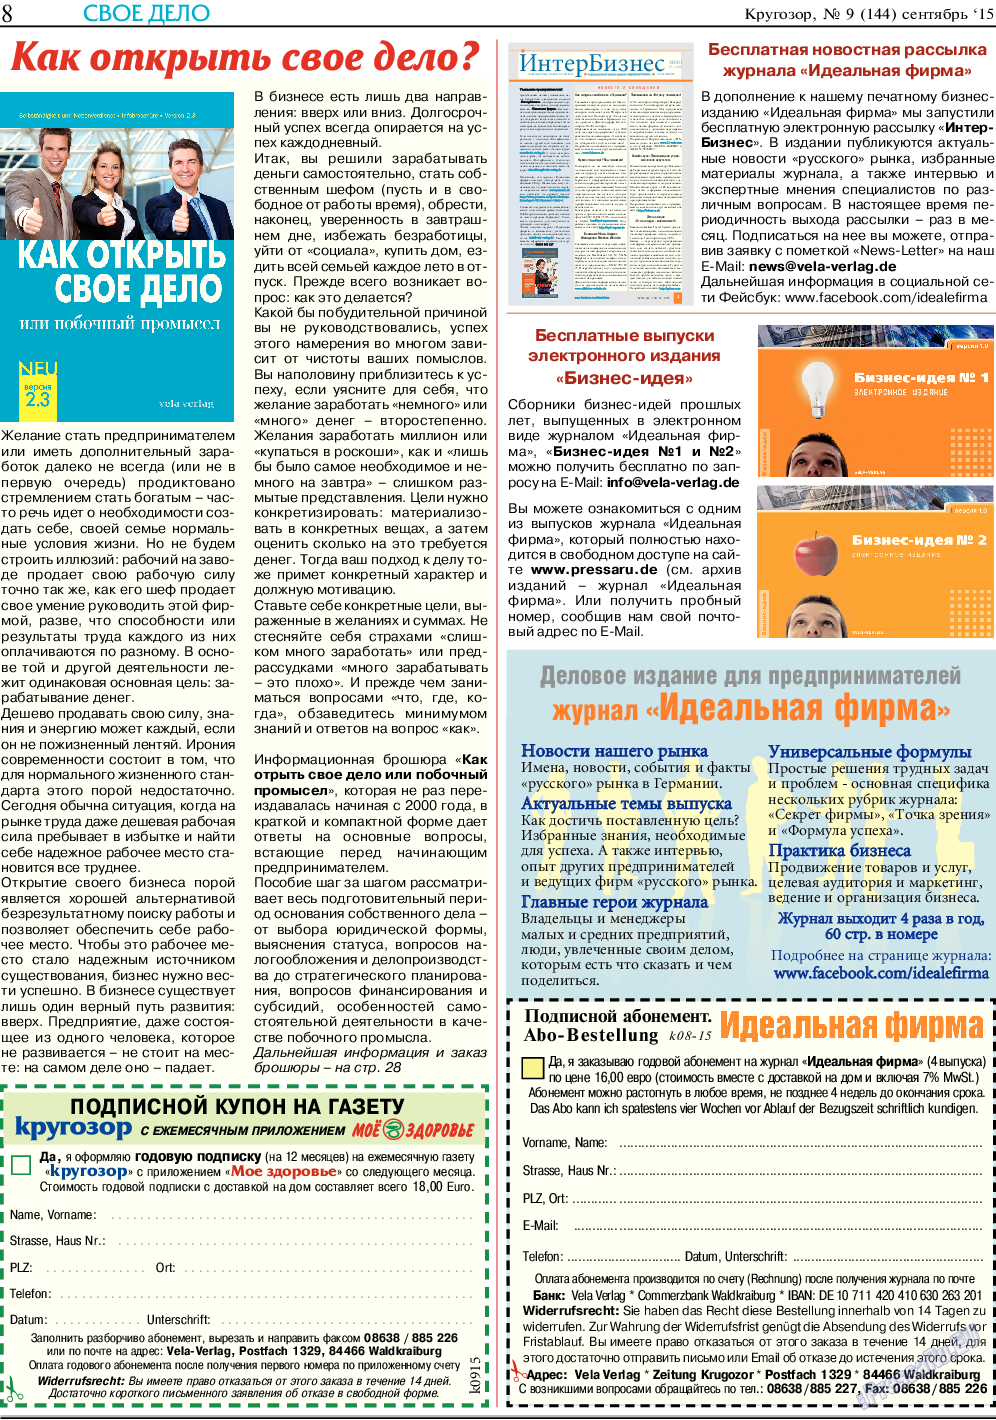 Кругозор, газета. 2015 №9 стр.8